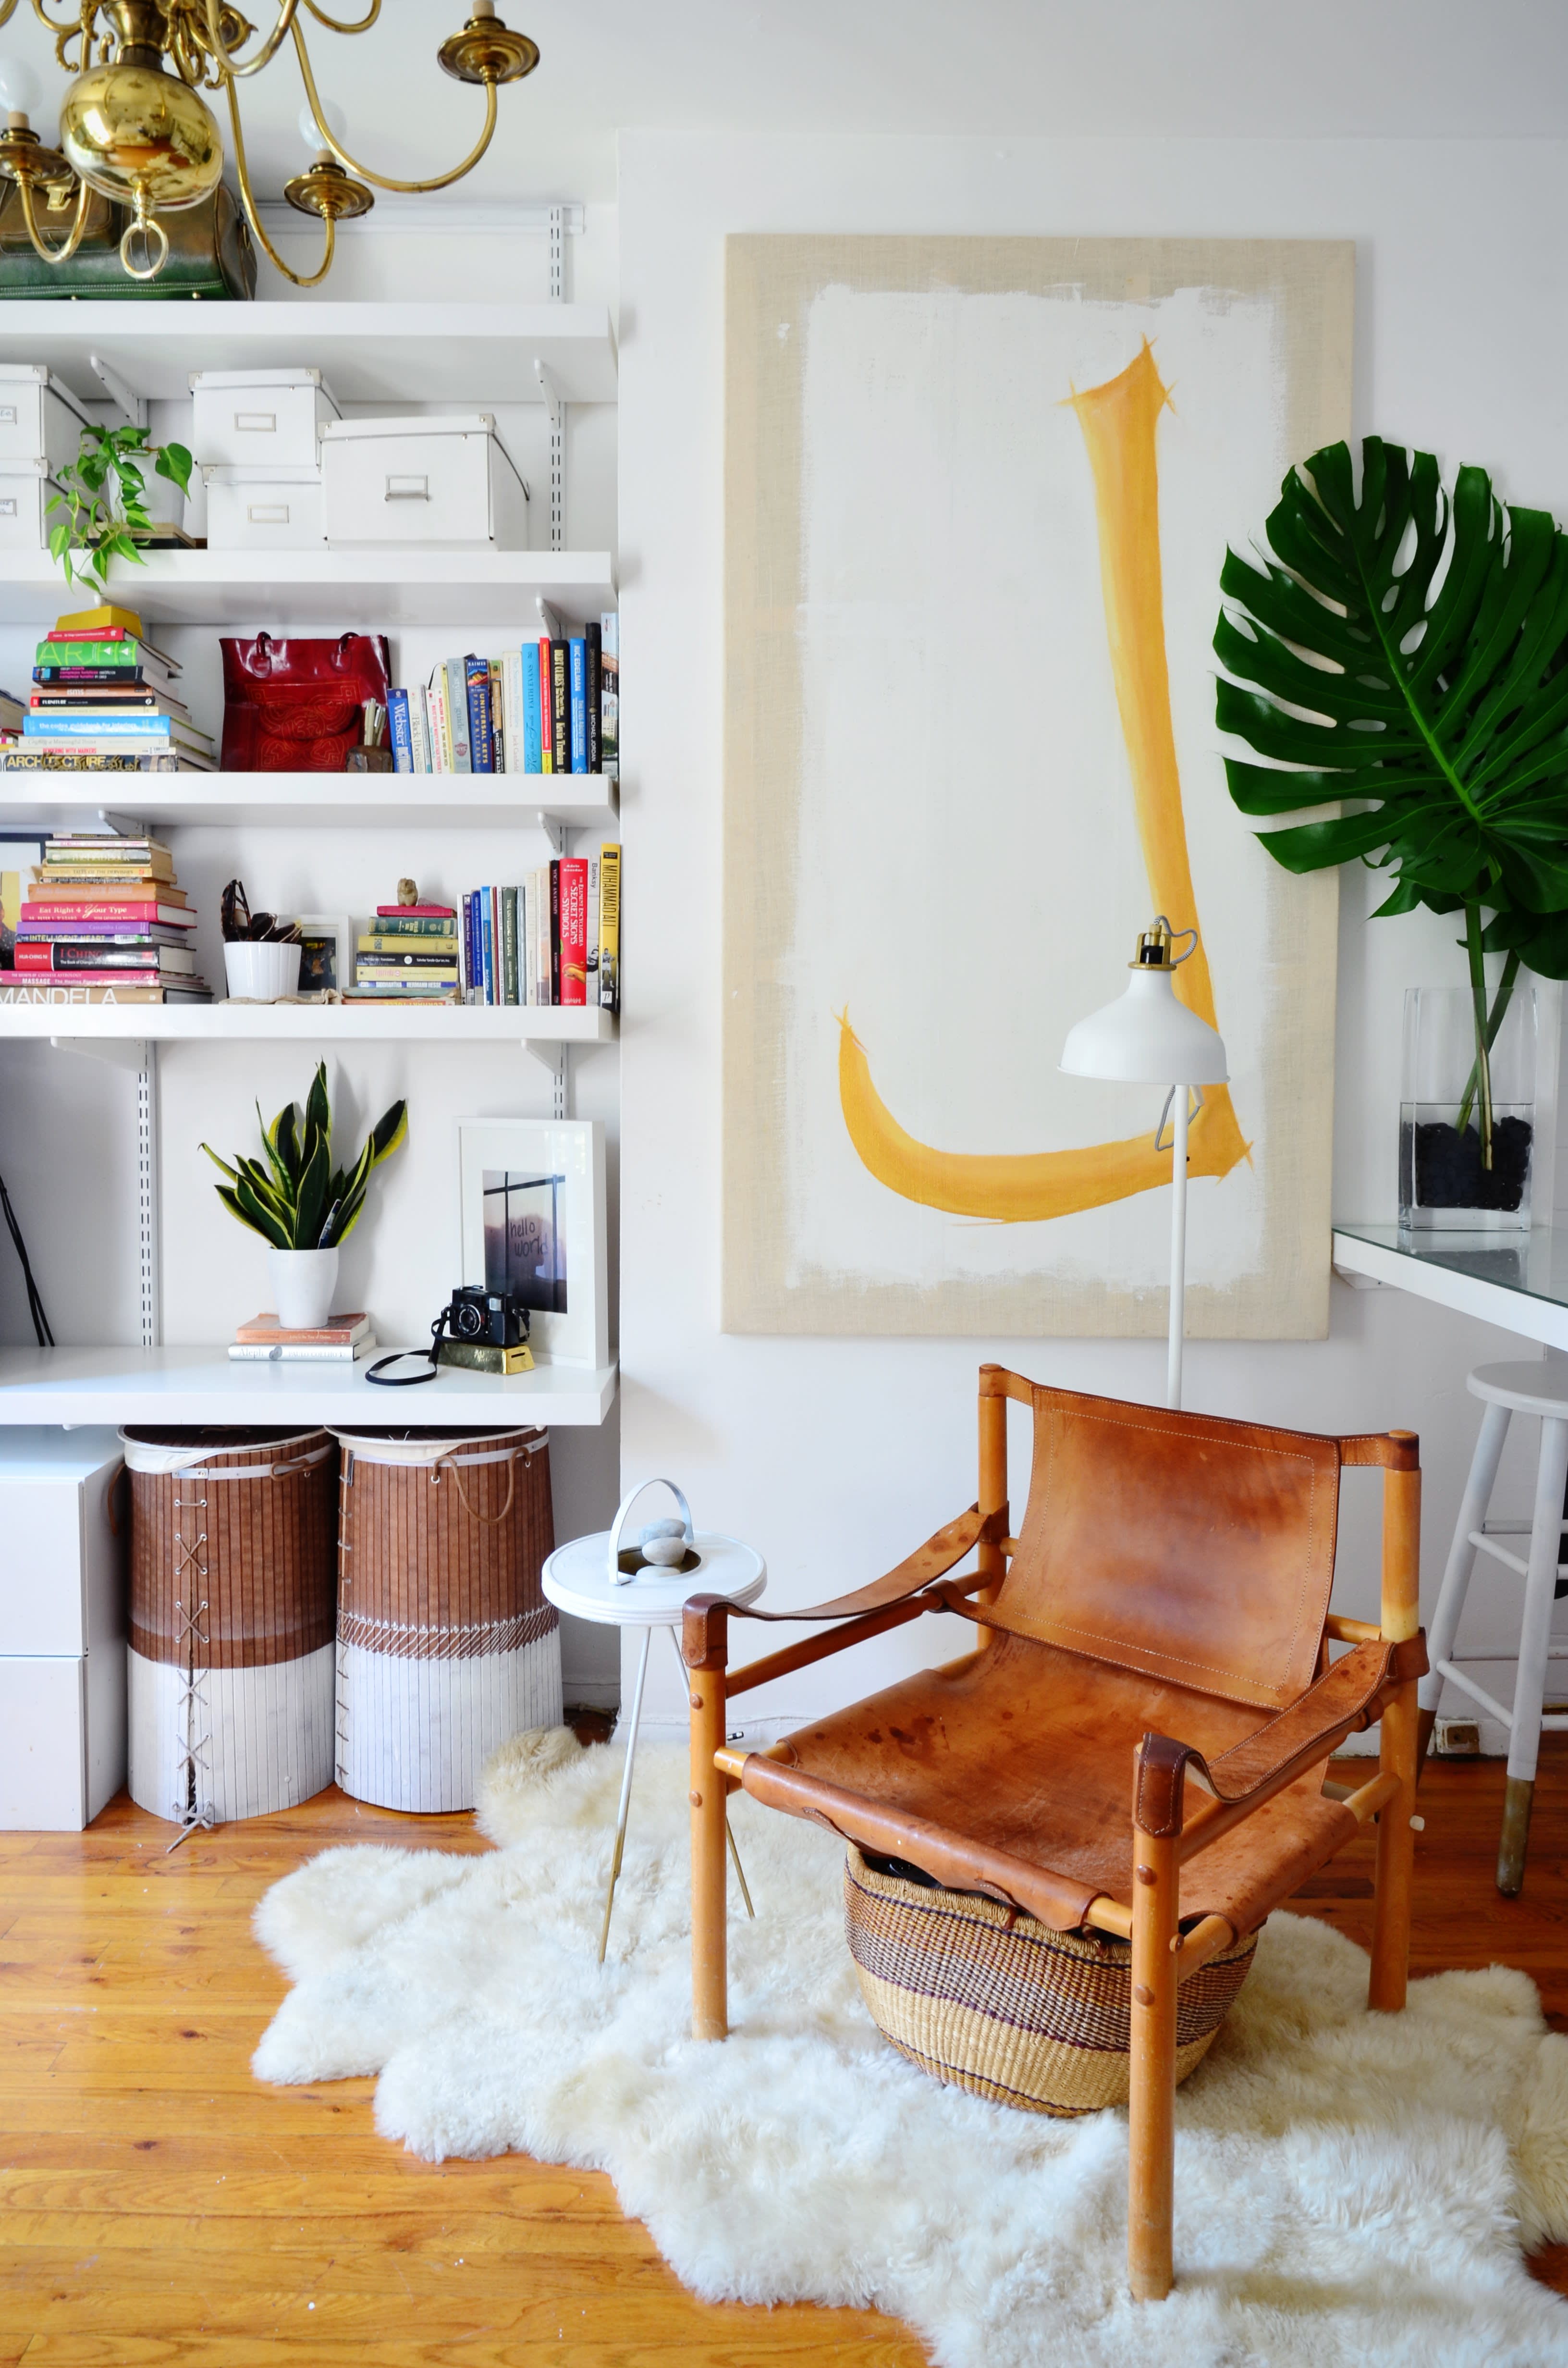 9 Smart Design Ideas For Your Studio Apartment | Apartment ...